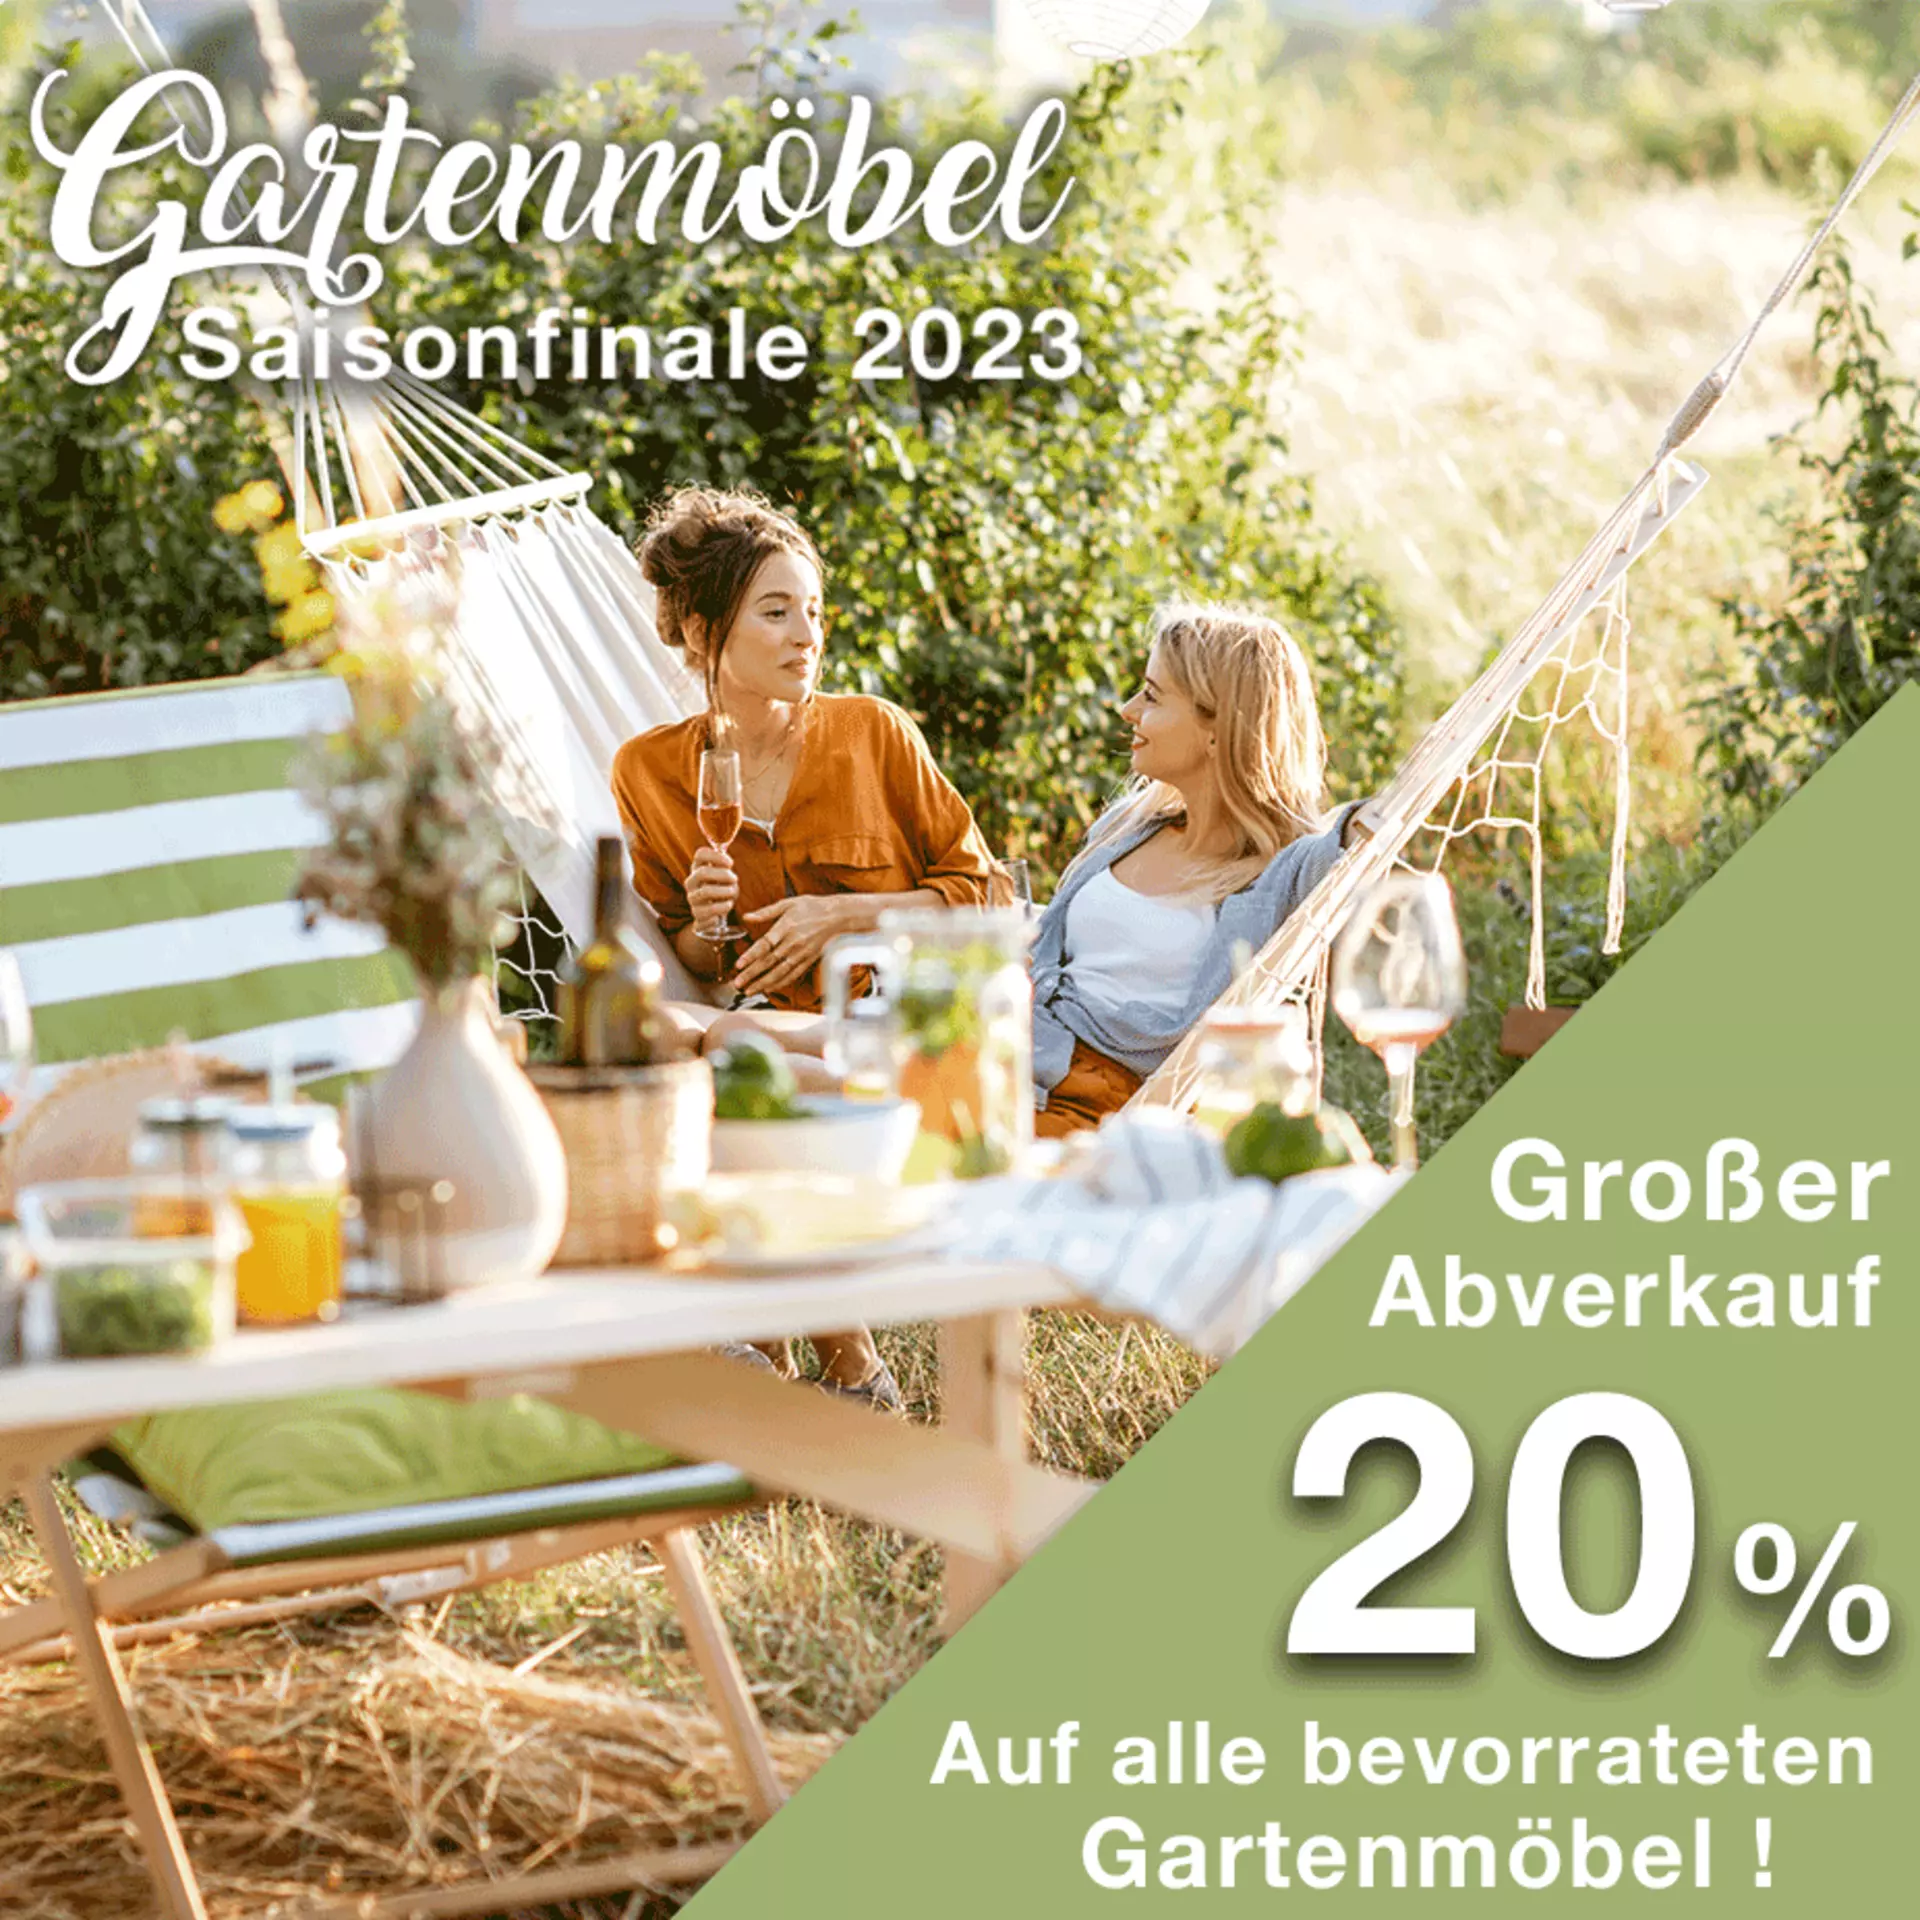 Gartenmöbel Saisonfinale - jetzt 20% auf alle bevorrateten Gartenmöbel bei Möbel Inhofer sichern!